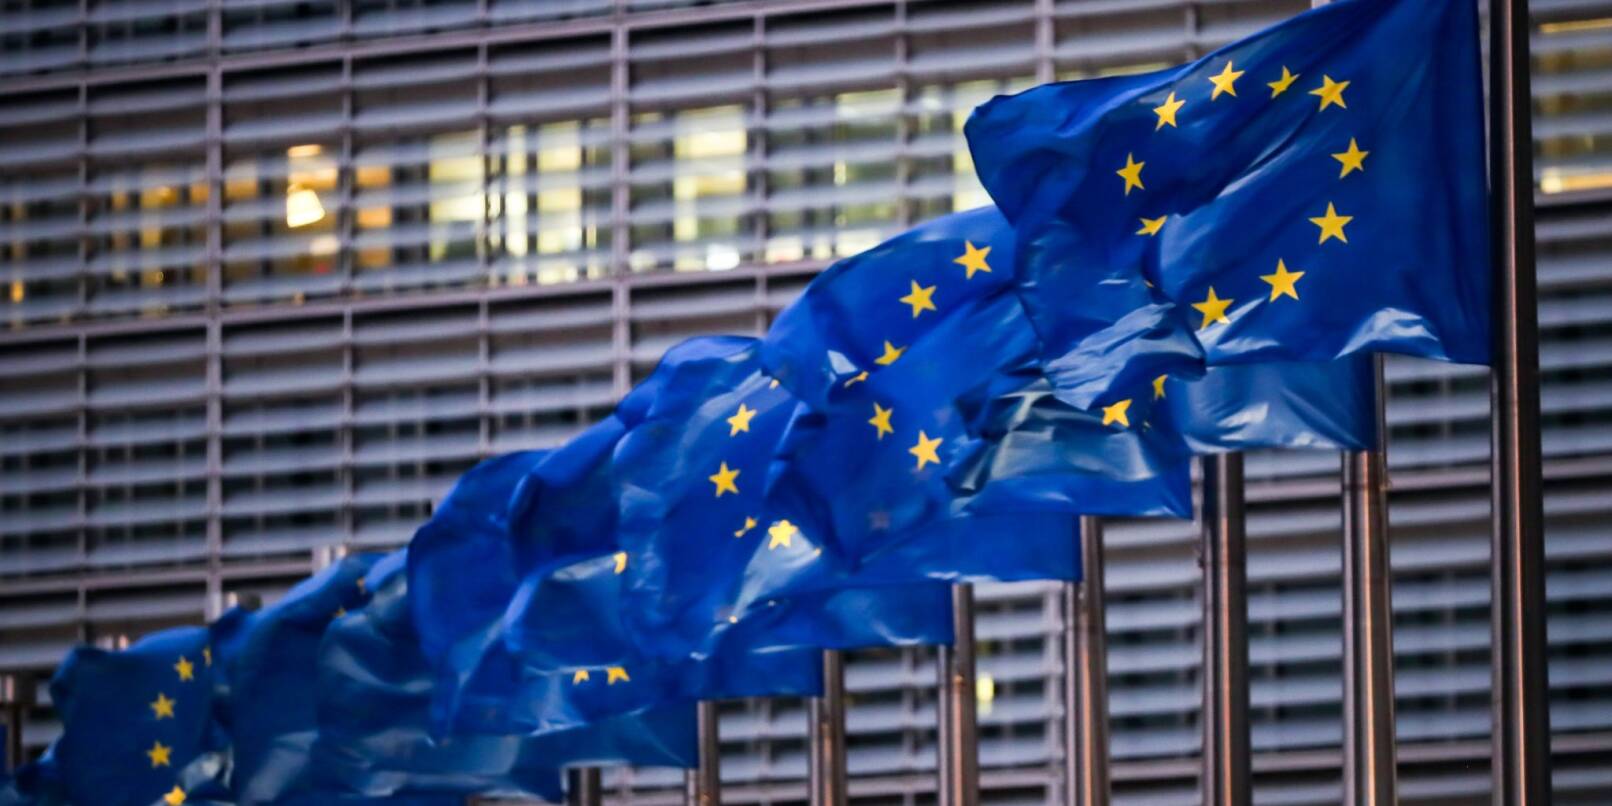 Europaflaggen wehen vor dem Sitz der EU-Kommission. «Wir leben in einer sehr anderen Welt als vor 30 Jahren. Andere Herausforderungen, andere Prioritäten», sagt Kommissionsvizepräsident Valdis Dombrovskis zu der geplanten Reform des Schuldenabbaus.